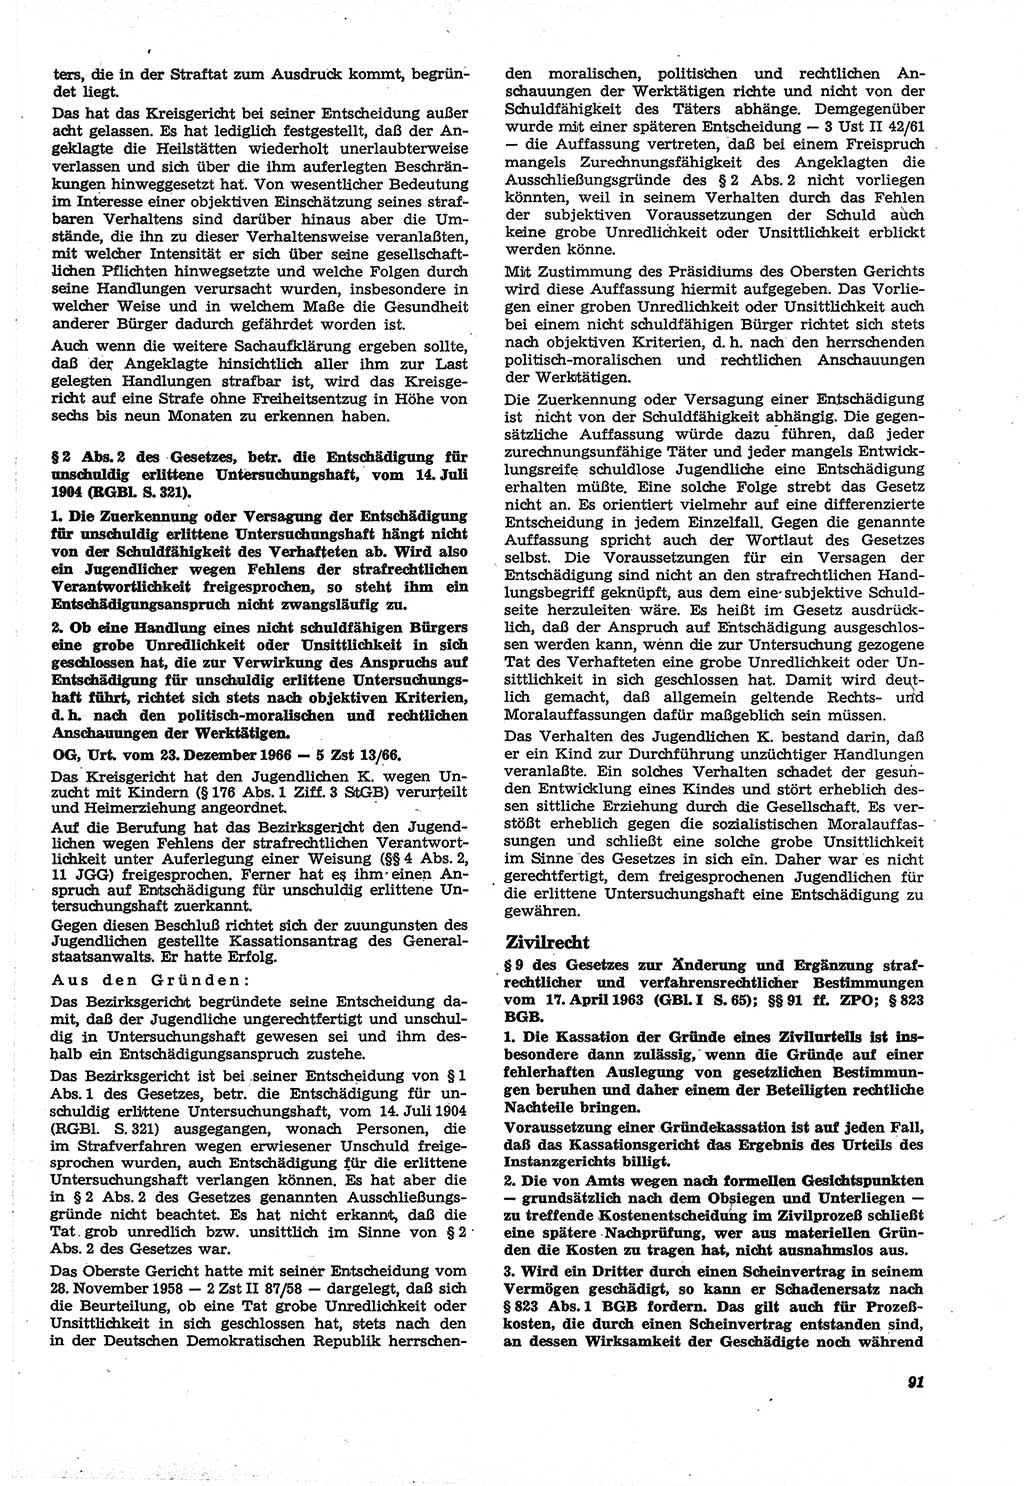 Neue Justiz (NJ), Zeitschrift für Recht und Rechtswissenschaft [Deutsche Demokratische Republik (DDR)], 21. Jahrgang 1967, Seite 91 (NJ DDR 1967, S. 91)